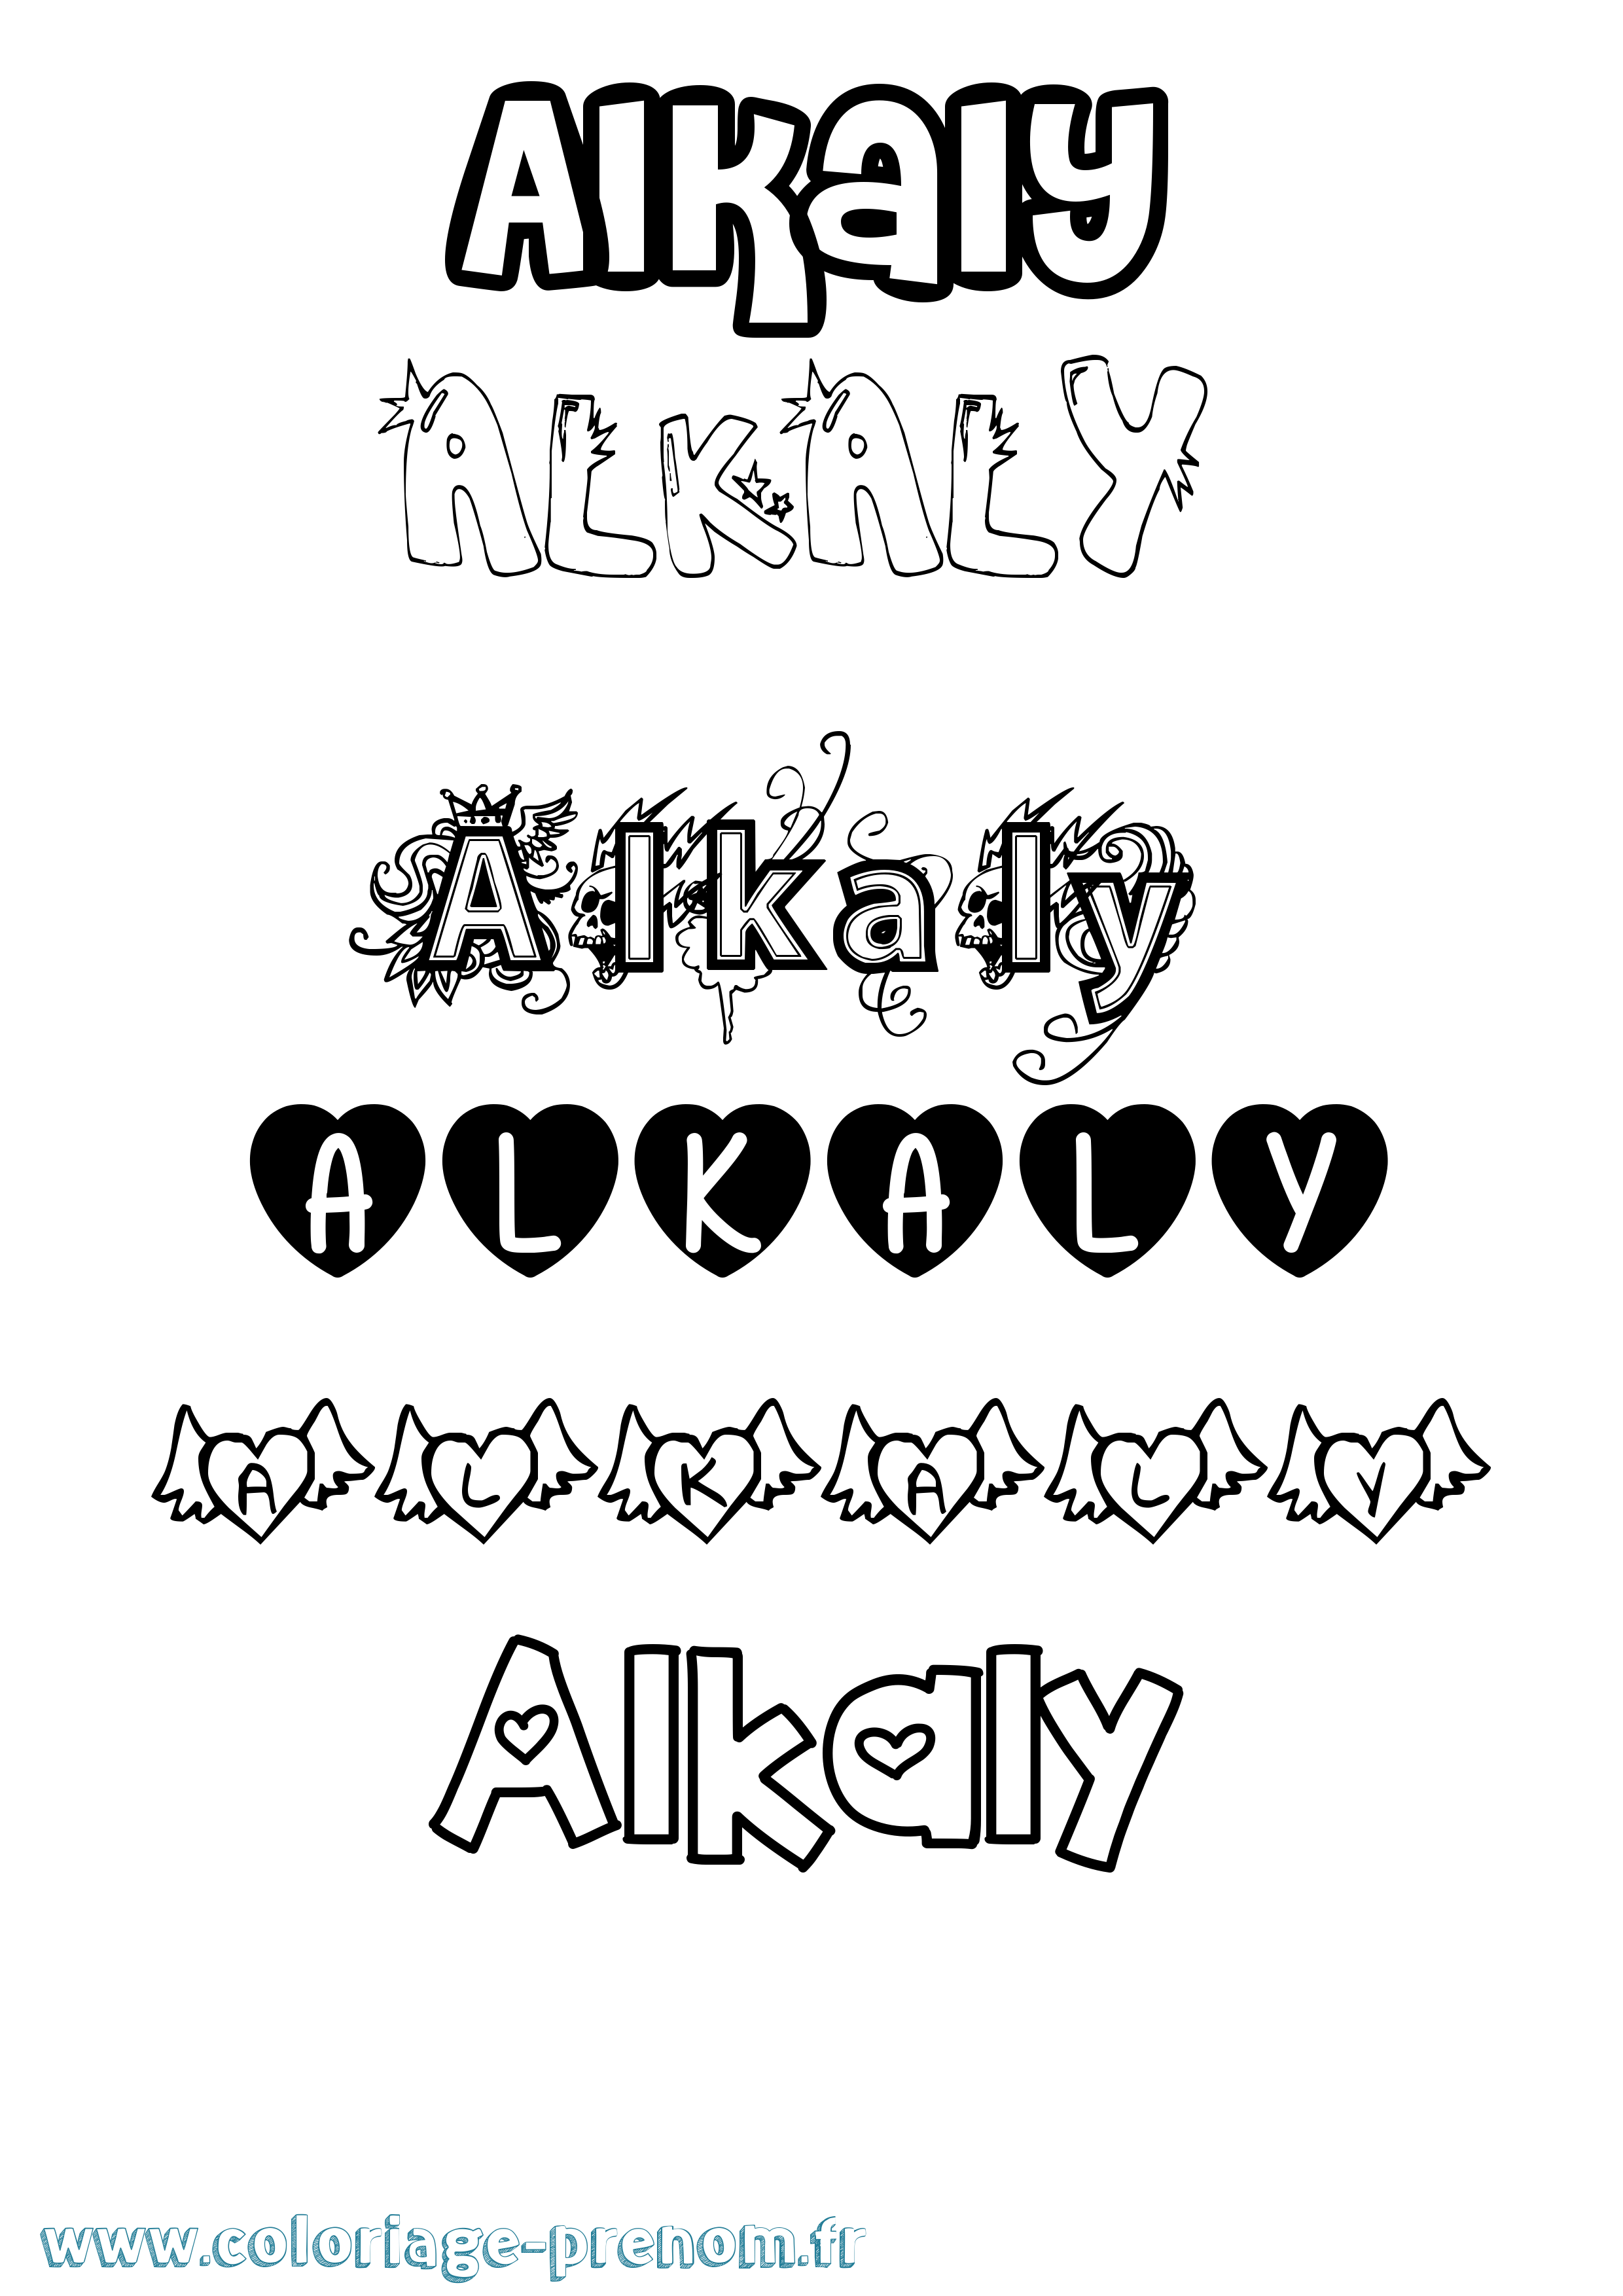 Coloriage prénom Alkaly Girly